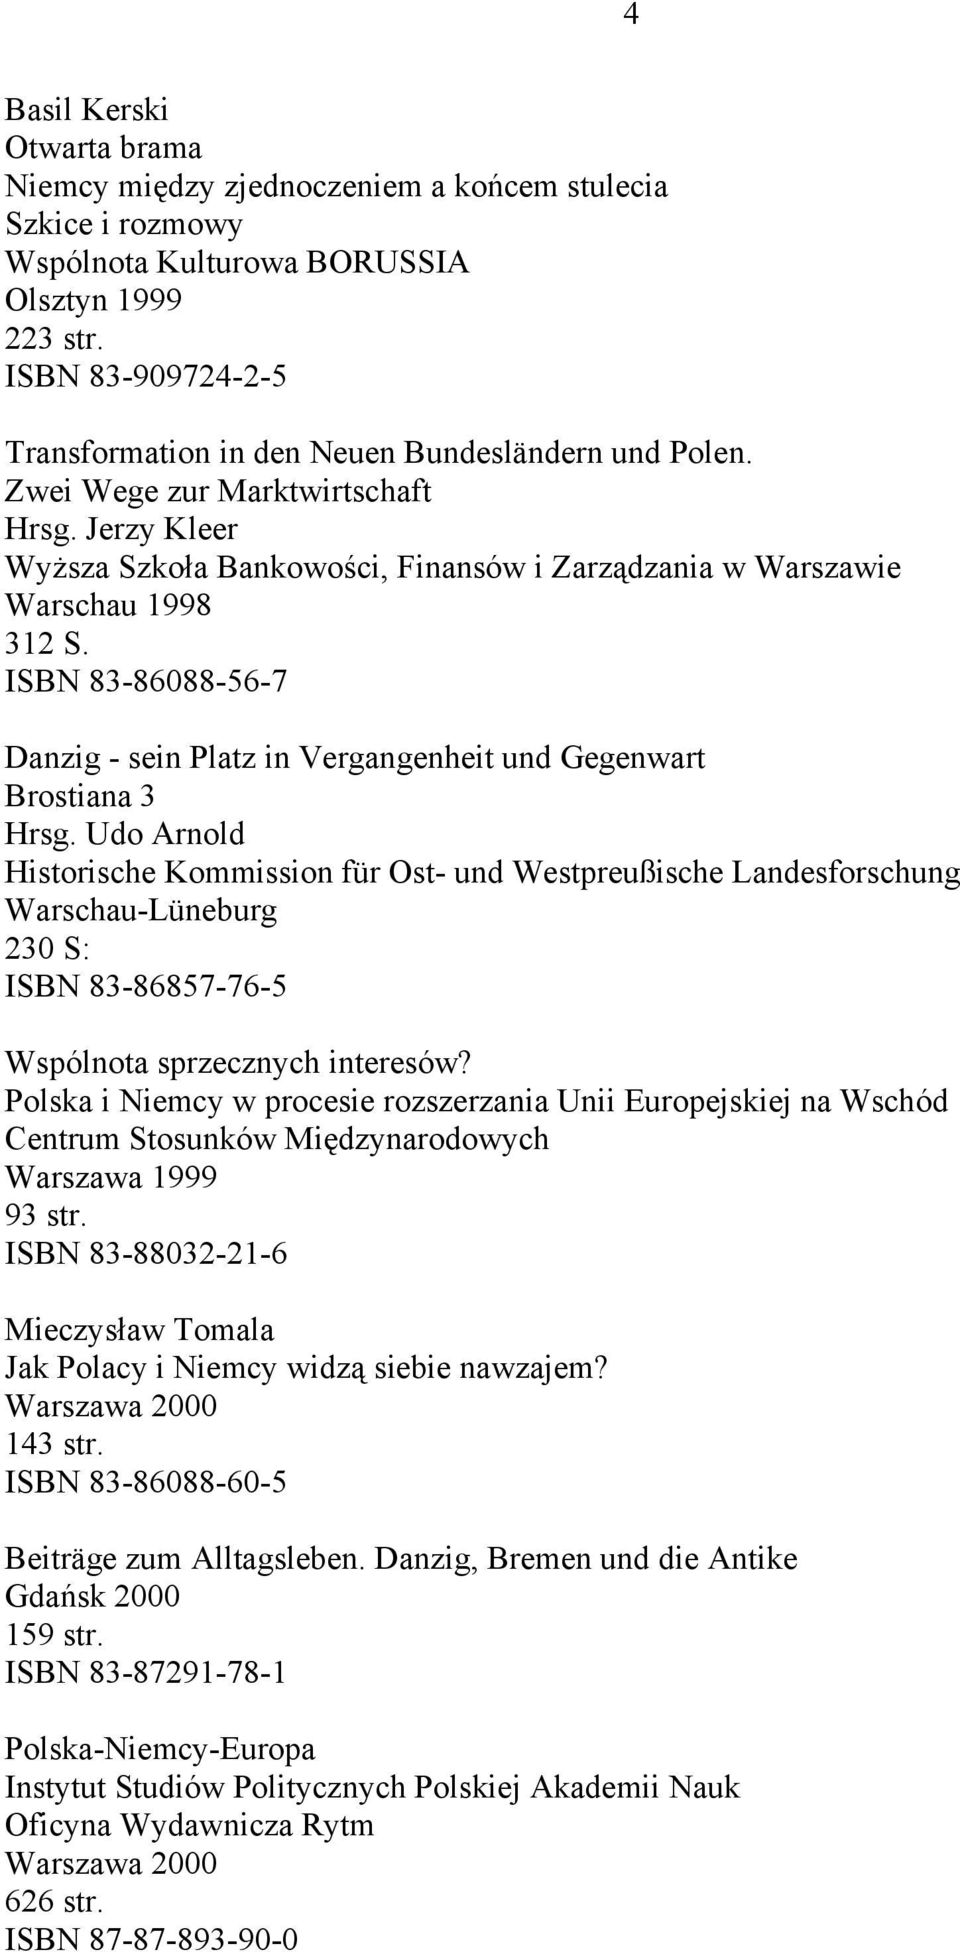 Jerzy Kleer Wyższa Szkoła Bankowości, Finansów i Zarządzania w Warszawie Warschau 1998 312 S. ISBN 83-86088-56-7 Danzig - sein Platz in Vergangenheit und Gegenwart Brostiana 3 Hrsg.